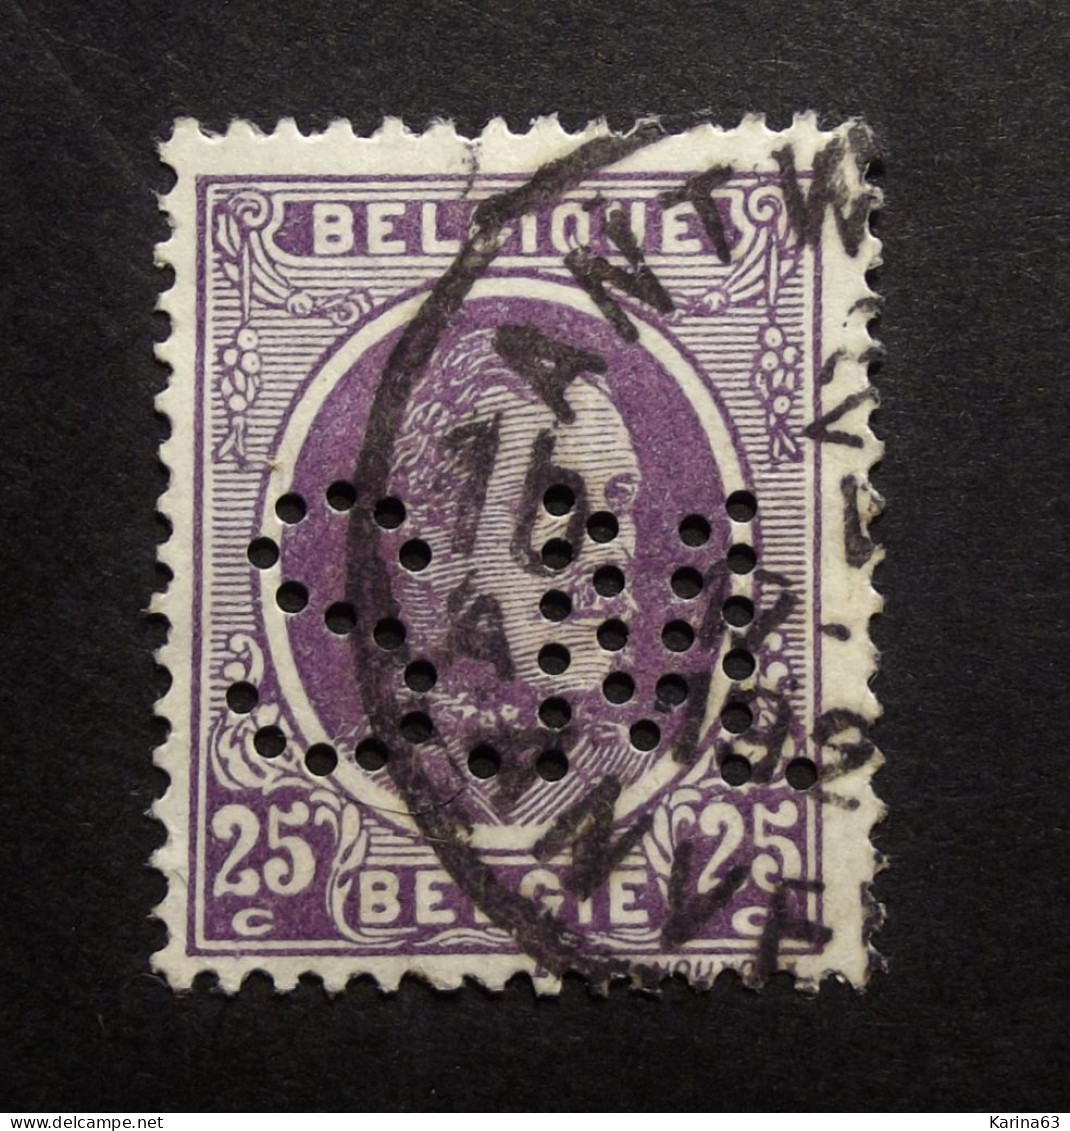 België - Belgique - Perfin Perforé -  S.M. -  Moritz Schauenburg -   COB 196 - Cancelled - 1909-34